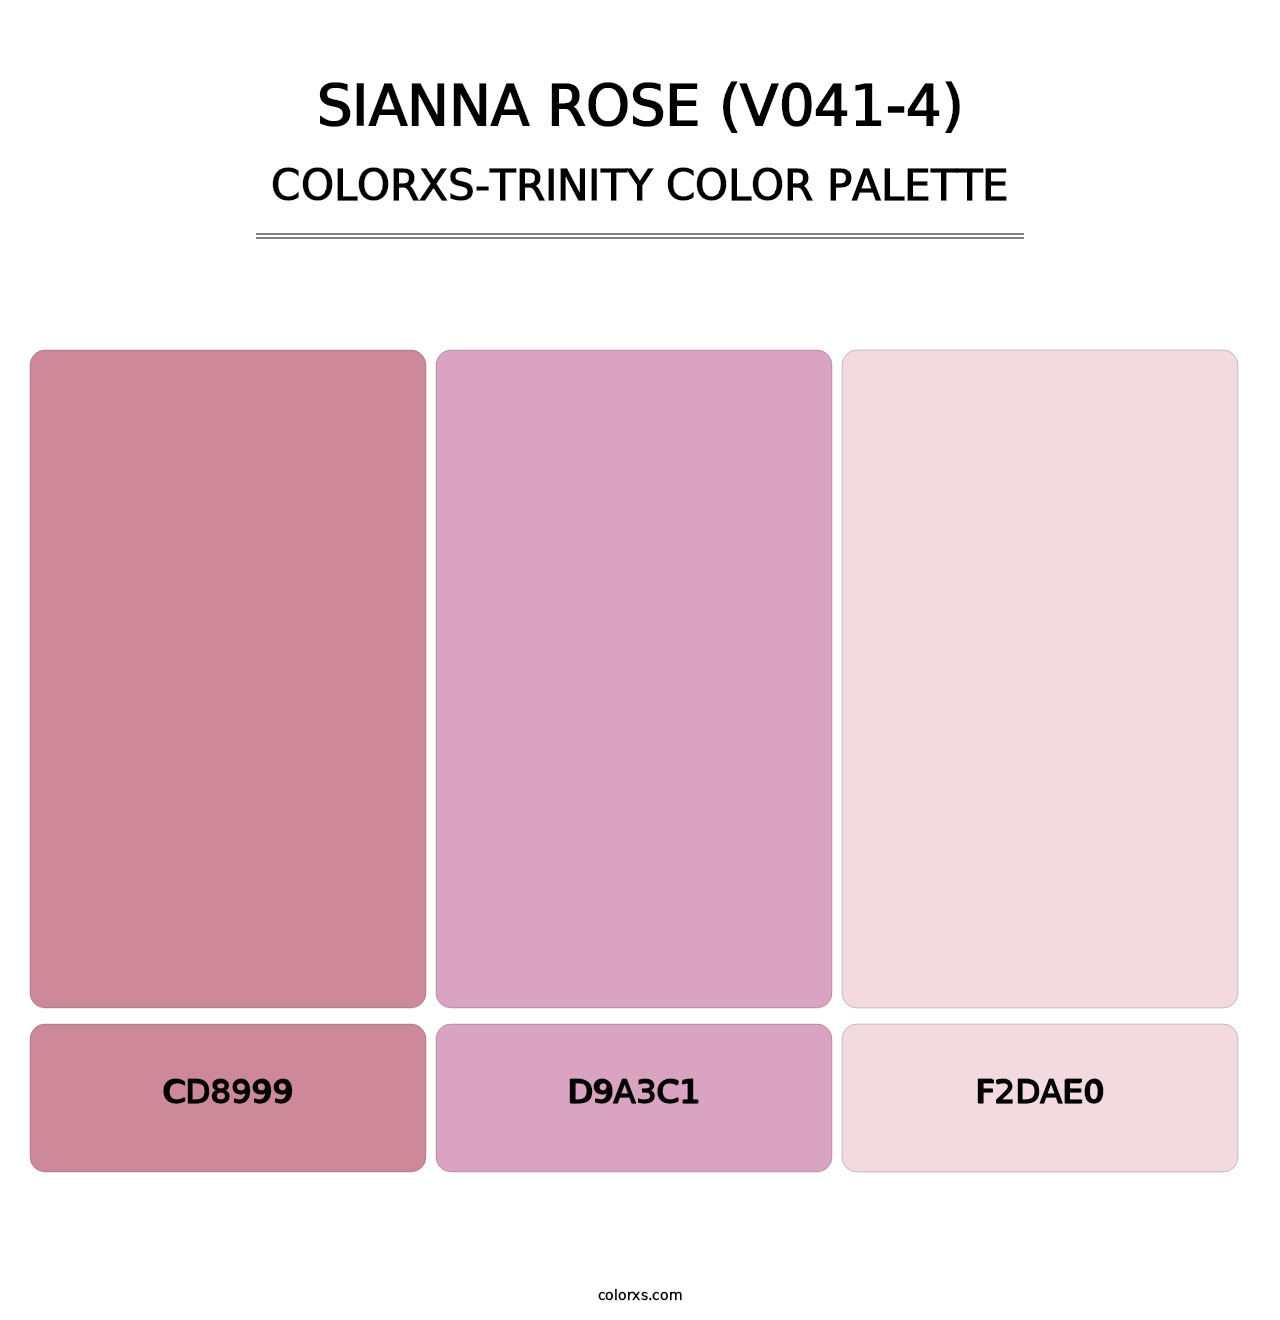 Sianna Rose (V041-4) - Colorxs Trinity Palette